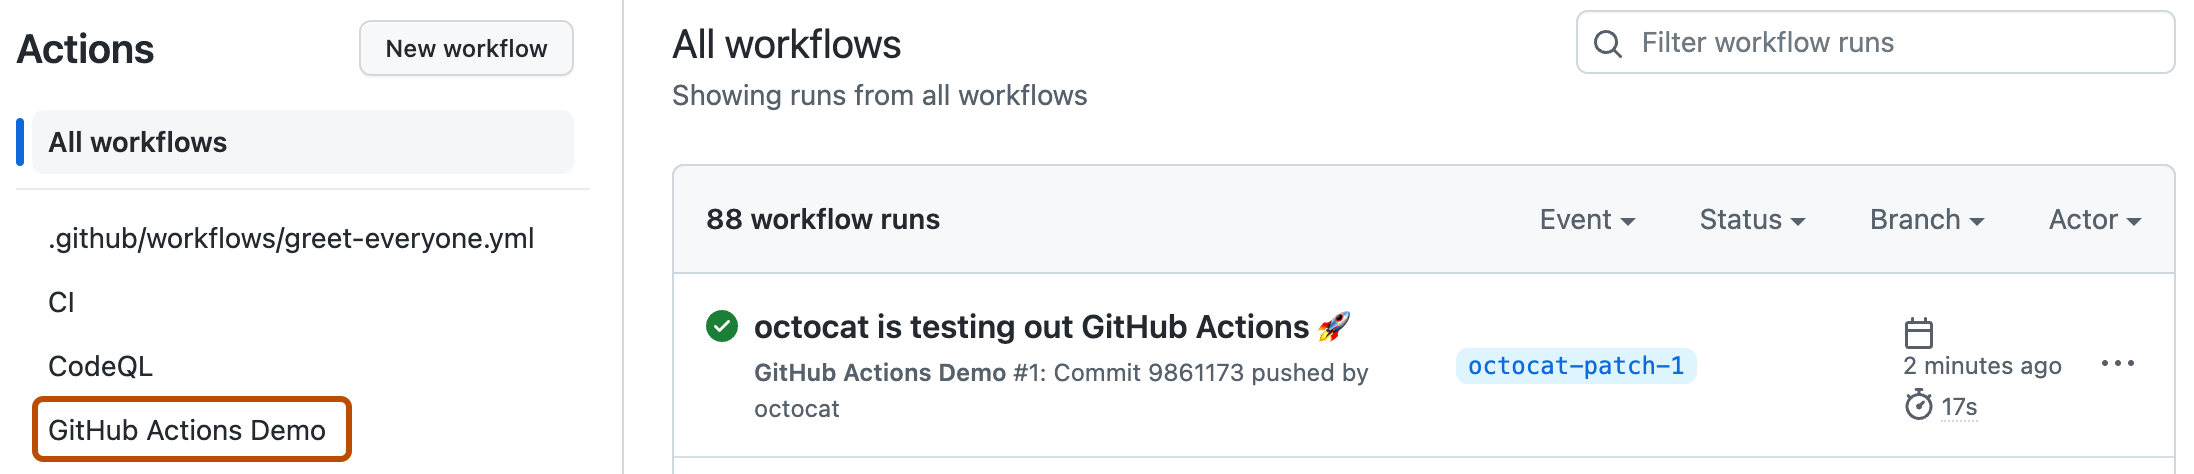 [アクション] ページのスクリーンショット。 サンプル ワークフローの名前 "GitHub Actions デモ" が、濃いオレンジ色の輪郭で強調表示されています。